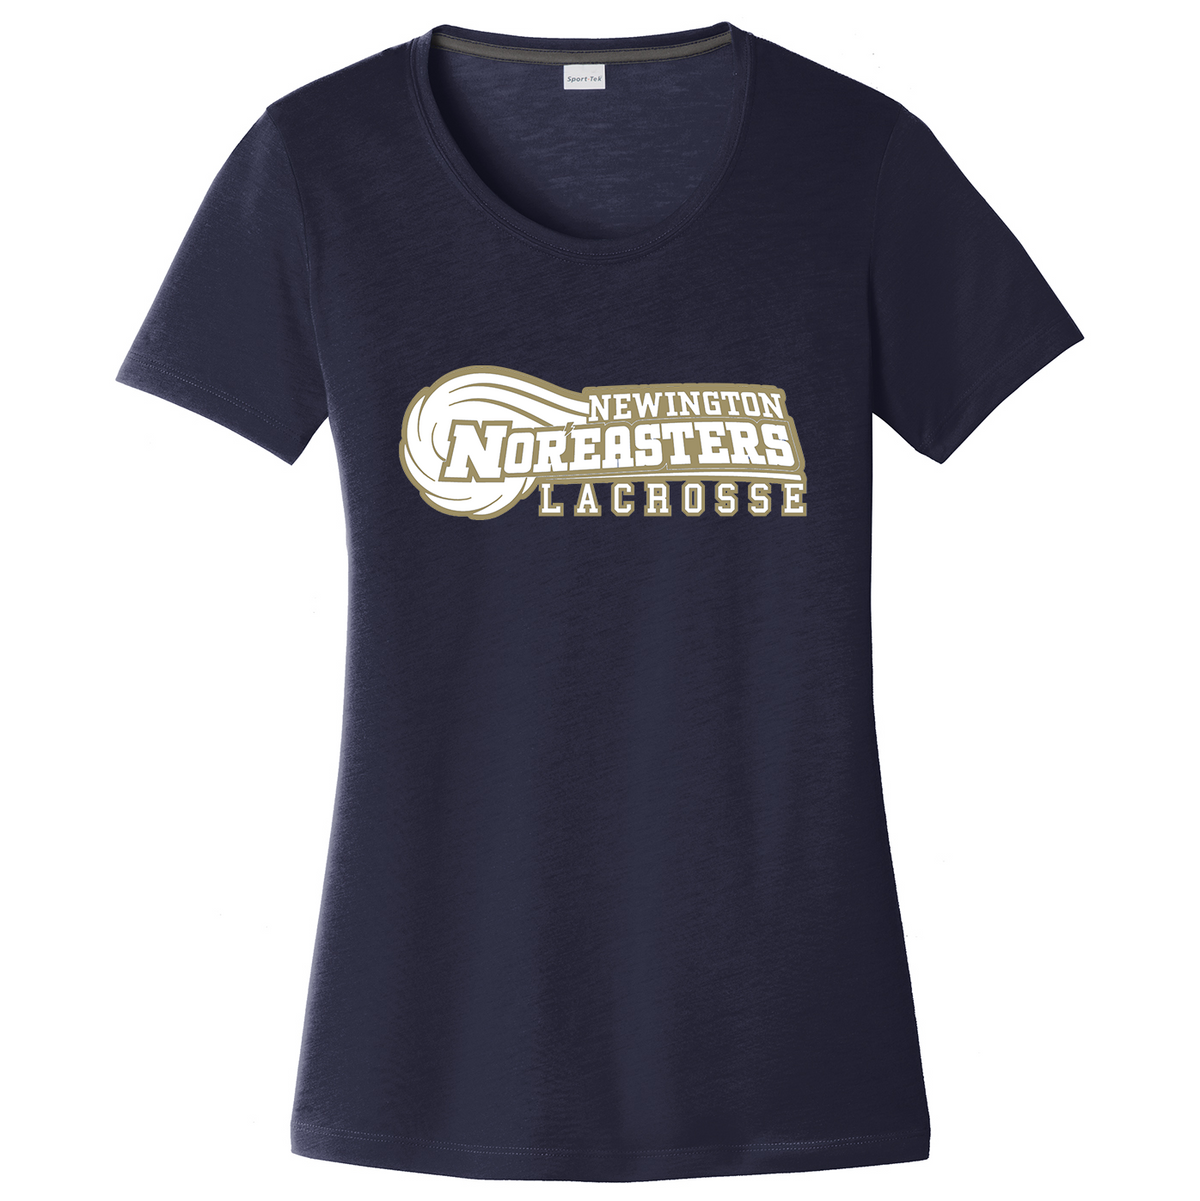 Newington High School Lacrosse Women's CottonTouch Performance T-Shirt